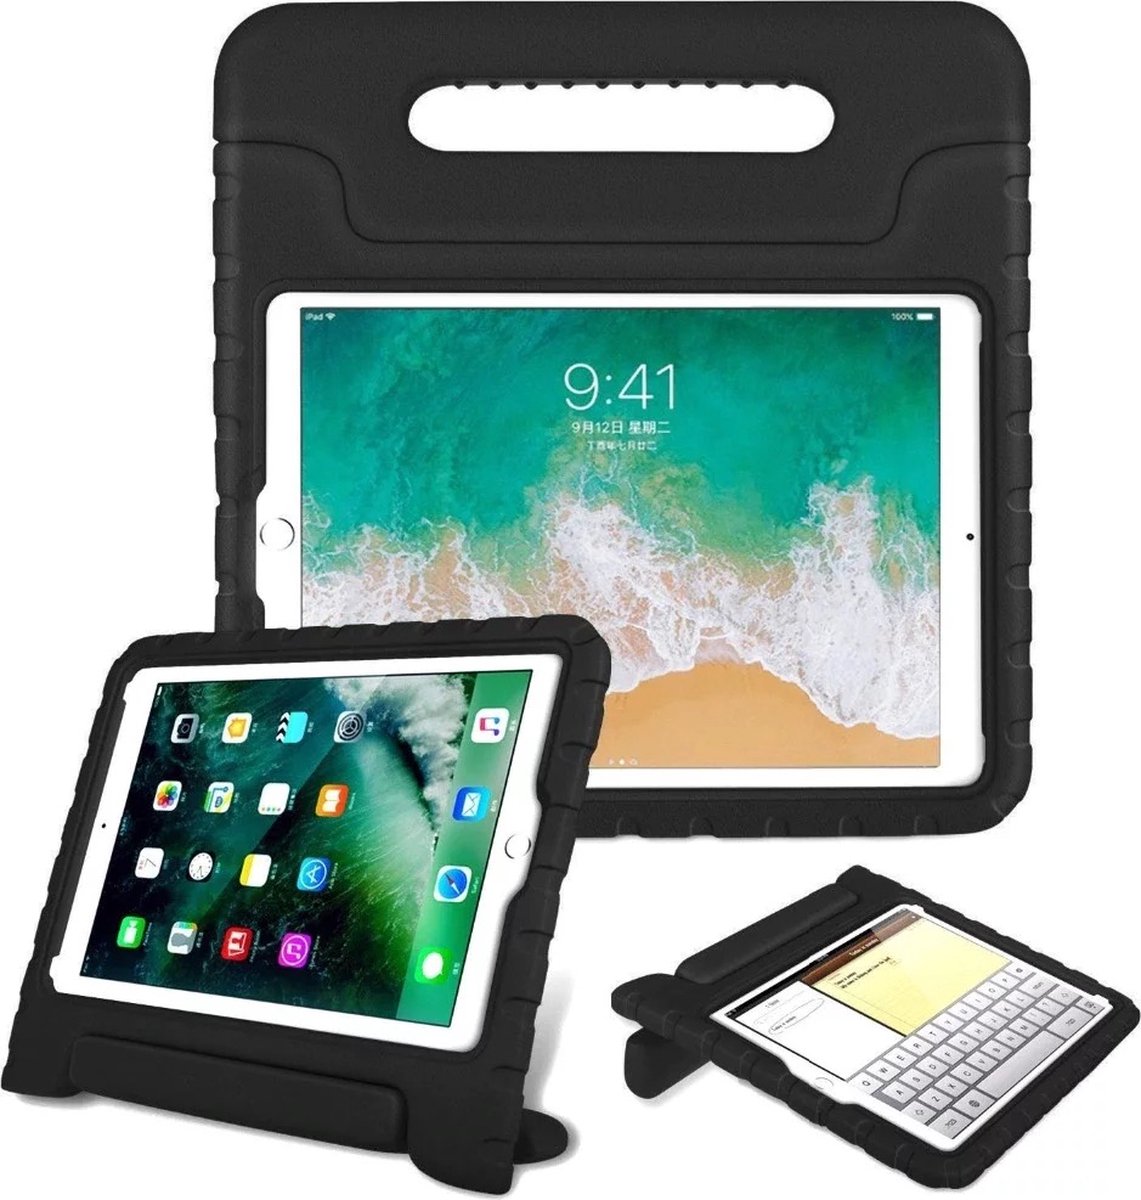 Waeyz Tablet Hoes geschikt voor kinderen extra bescherming Geschikt voor iPad Air 1 en iPad Air 2 2013 2014 model - Kidsproof Hoes Backcover met handvat - Zwart